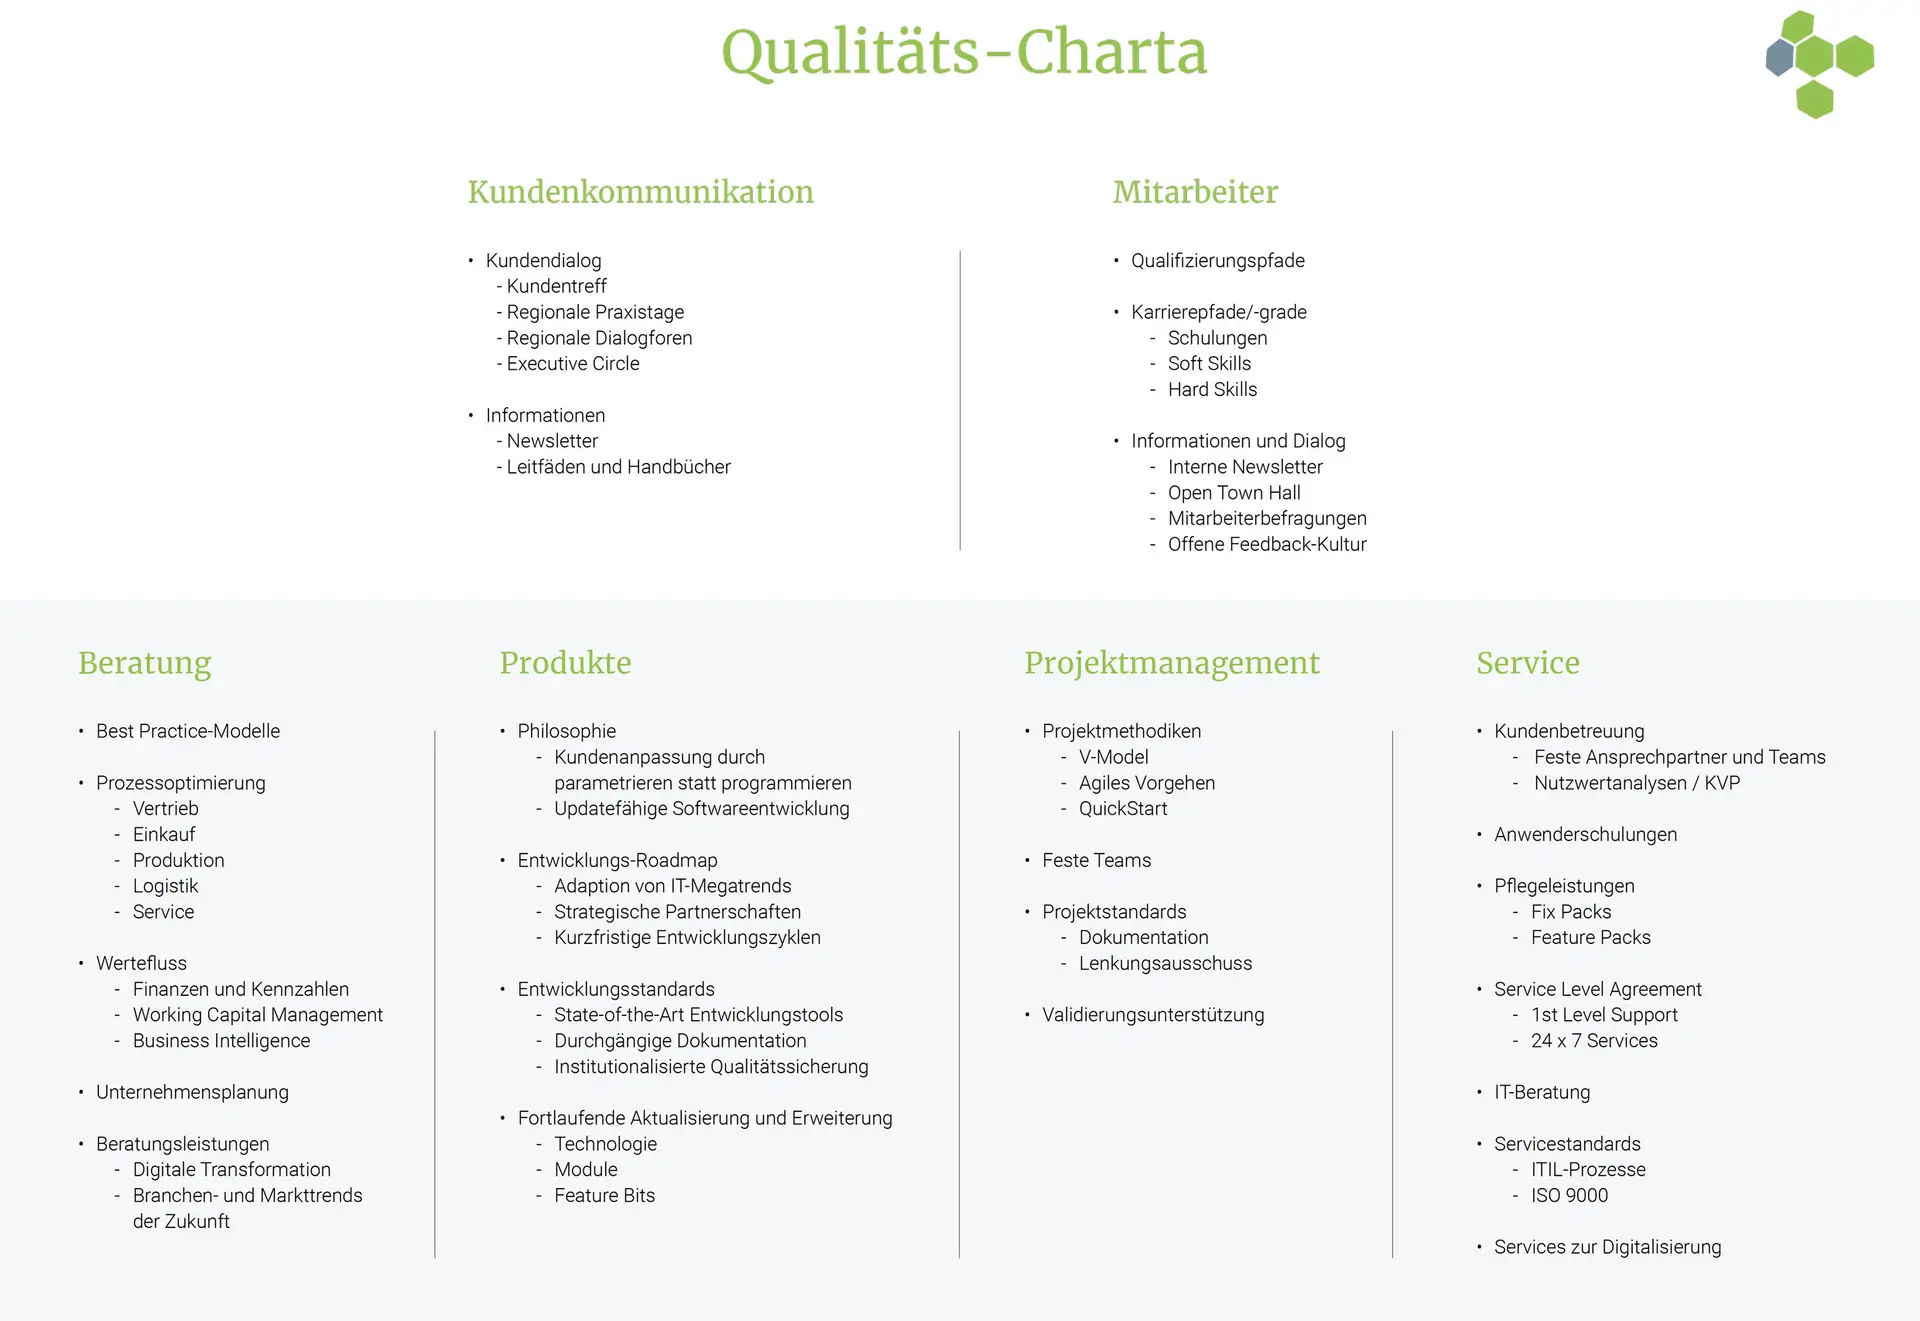 Qualitaets Charta 2020 - GUS-OS Suite - GUS ERP